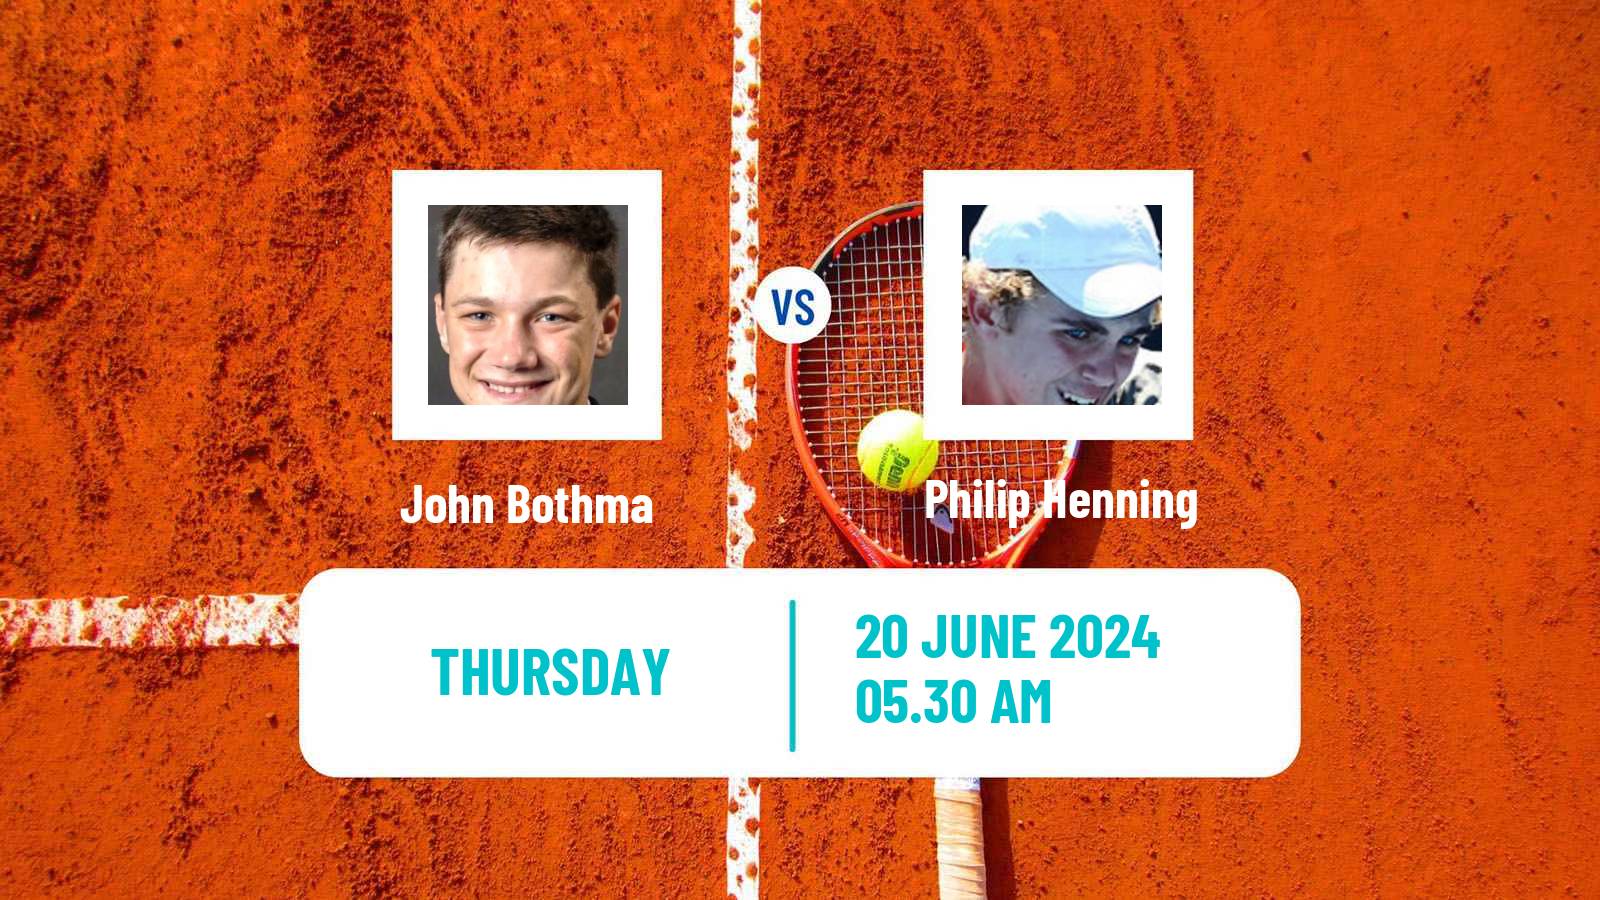 Tennis ITF M15 Hillcrest Men John Bothma - Philip Henning